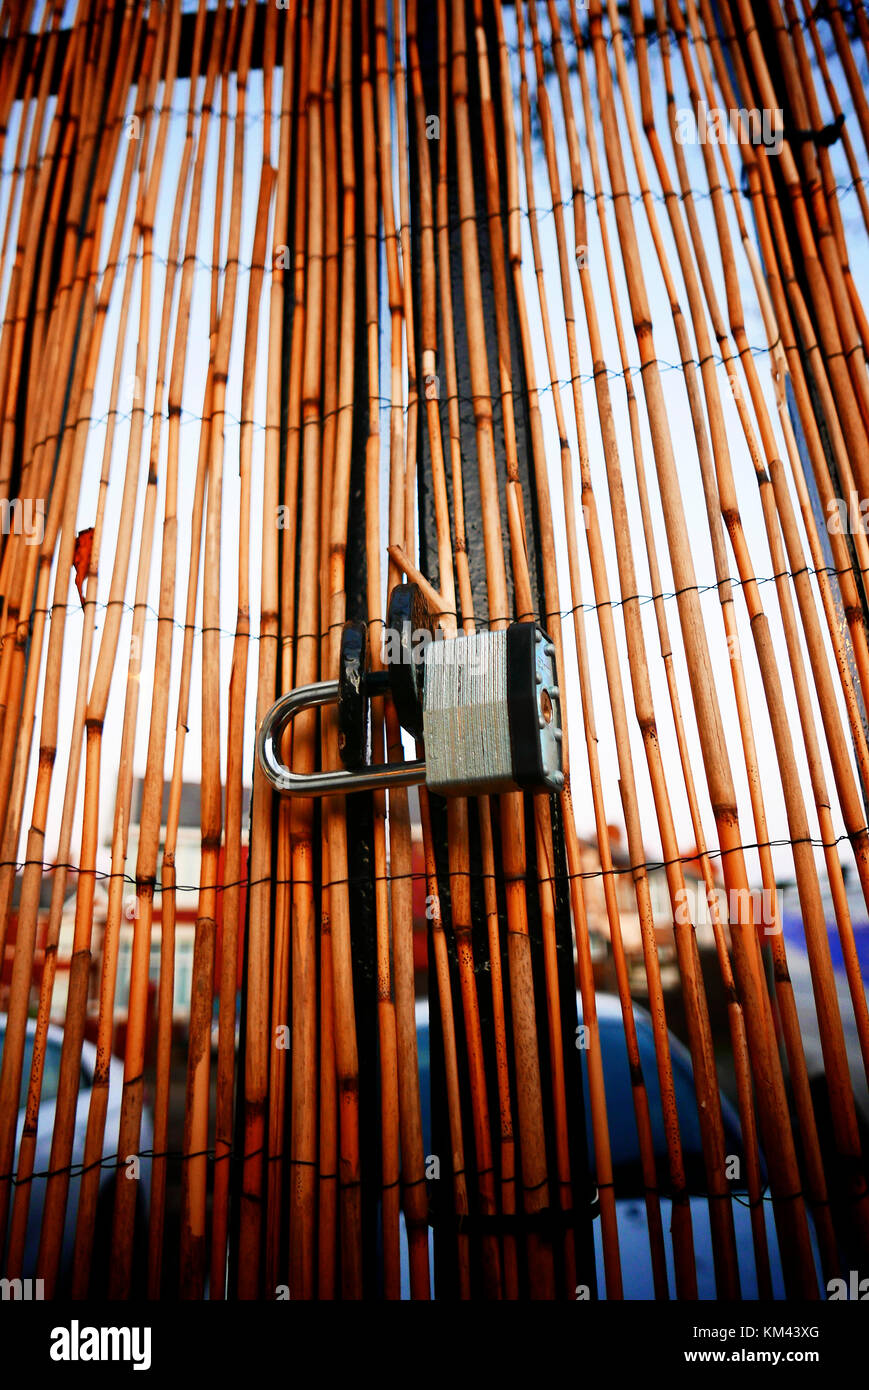 Steel padlock on thin bamboo curtain Stock Photo